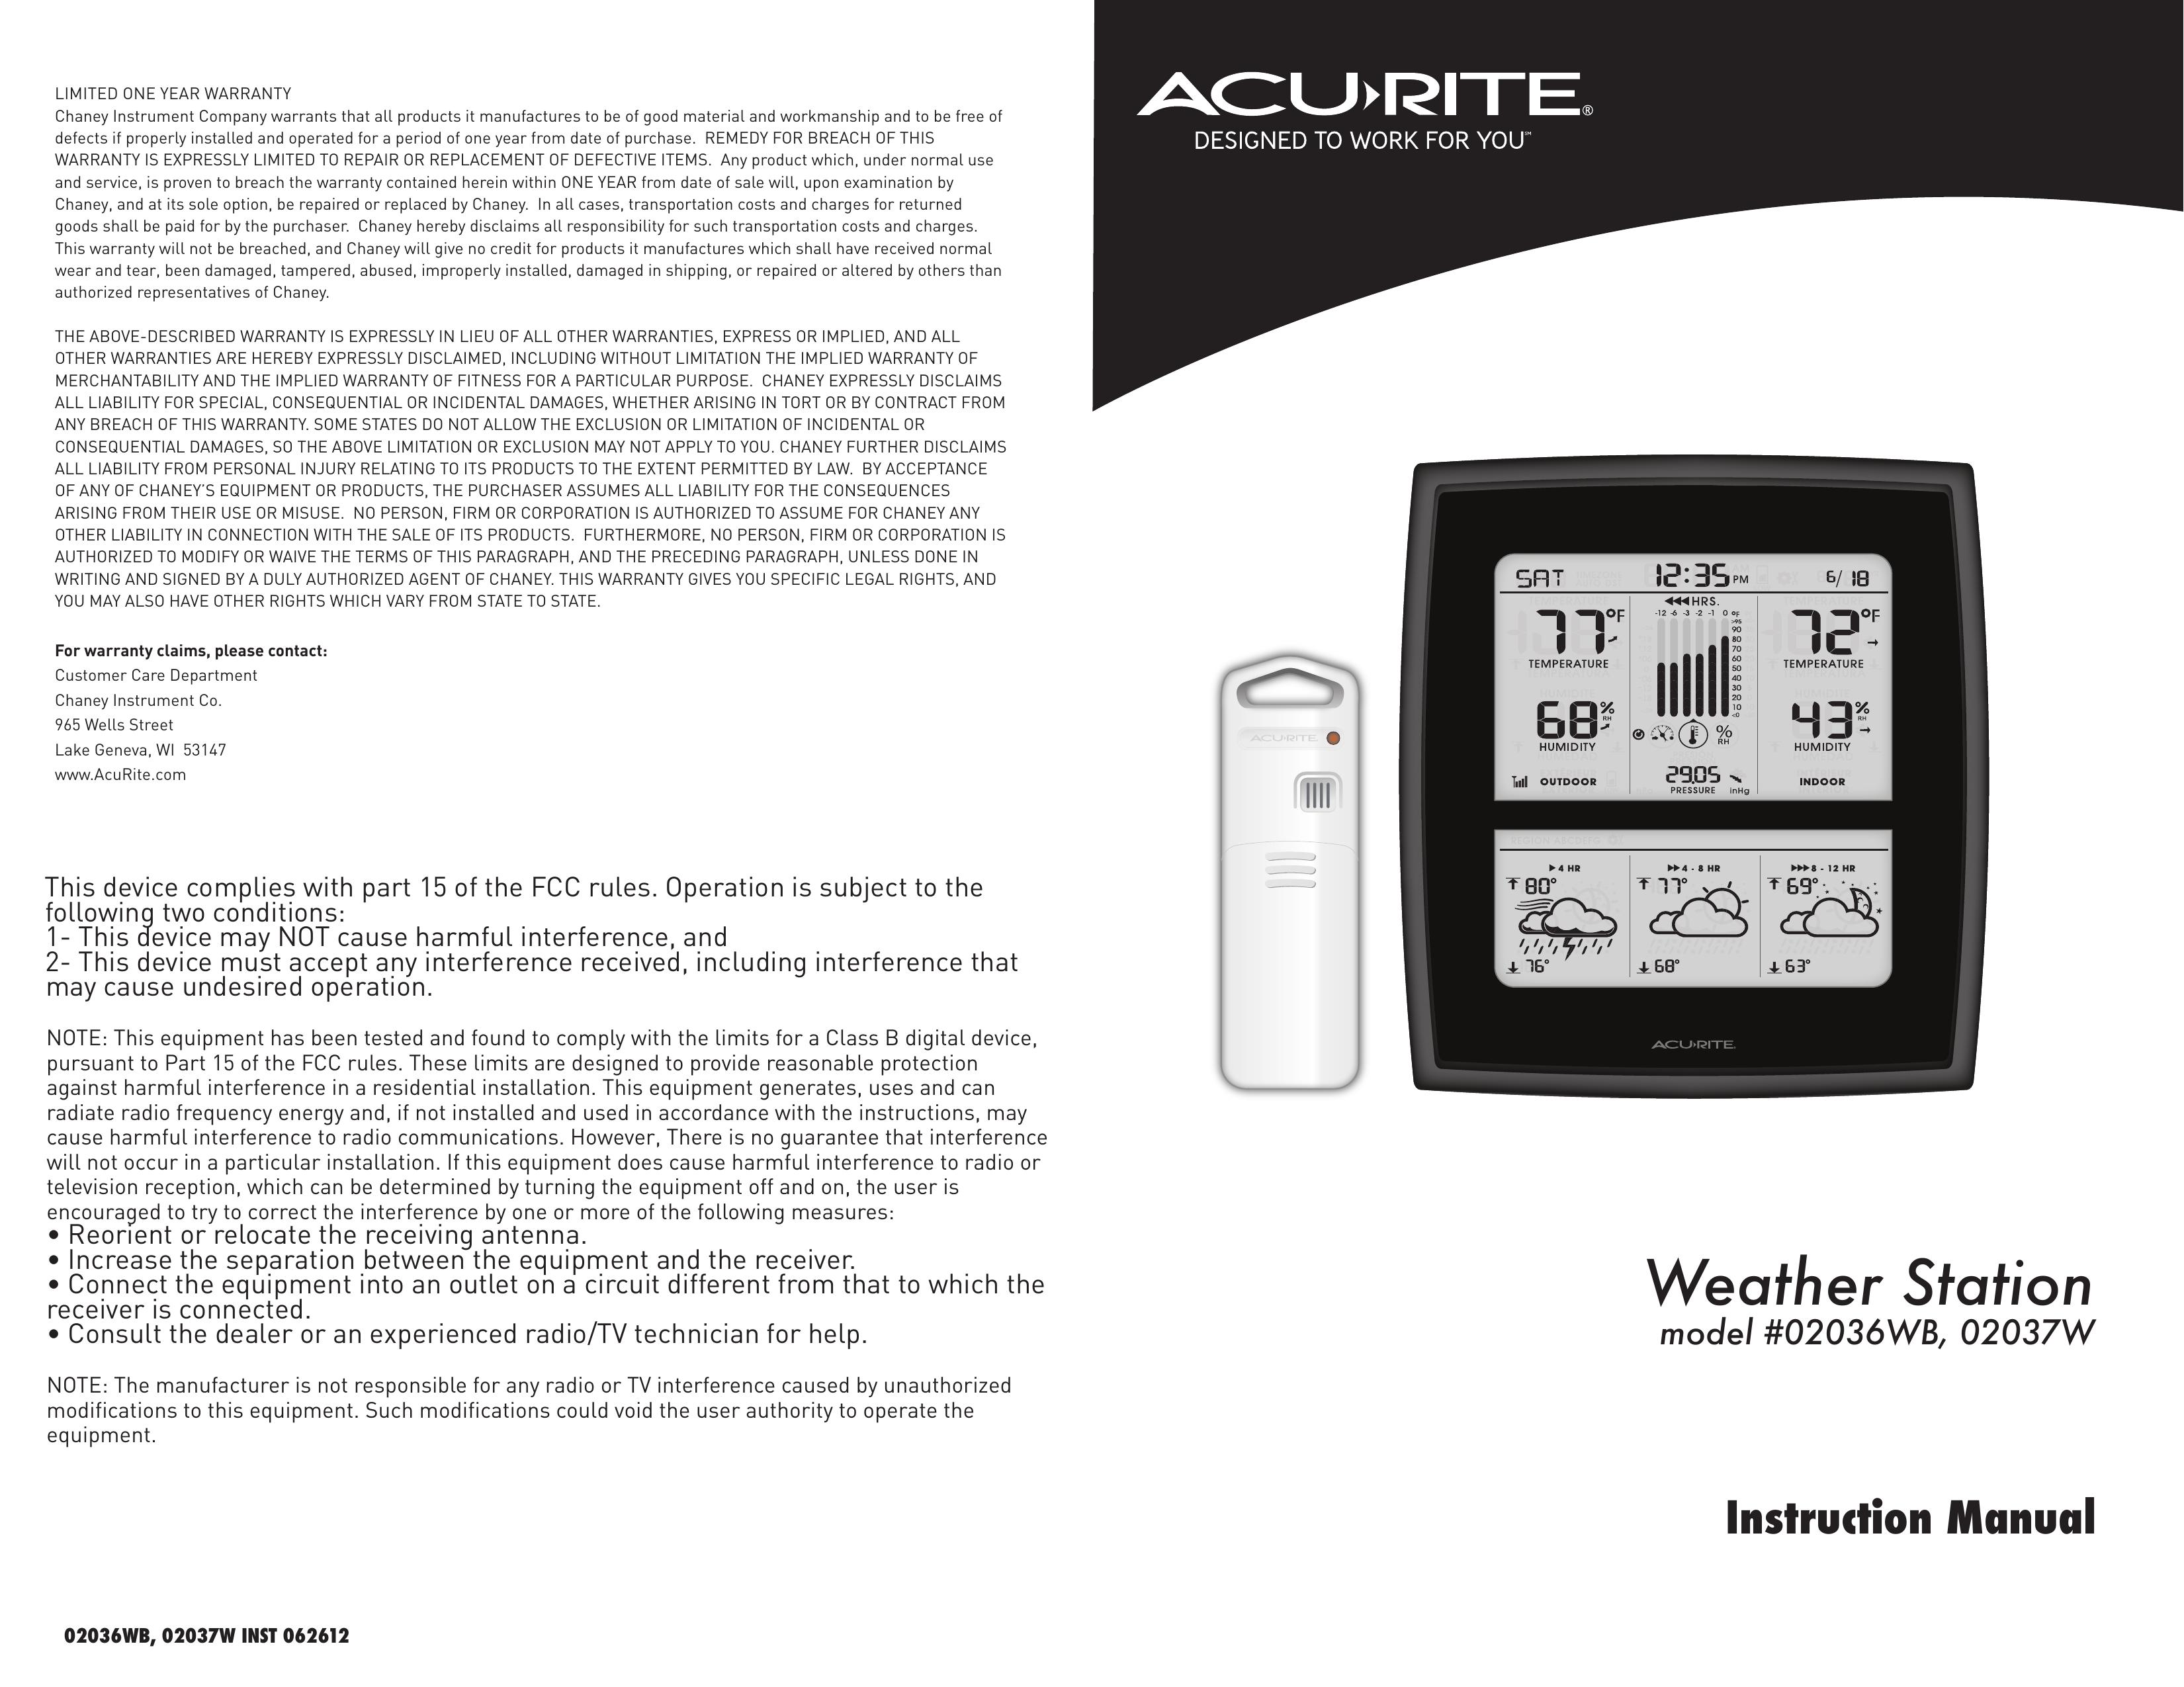 Acu-Rite 02036WB Weather Radio User Manual